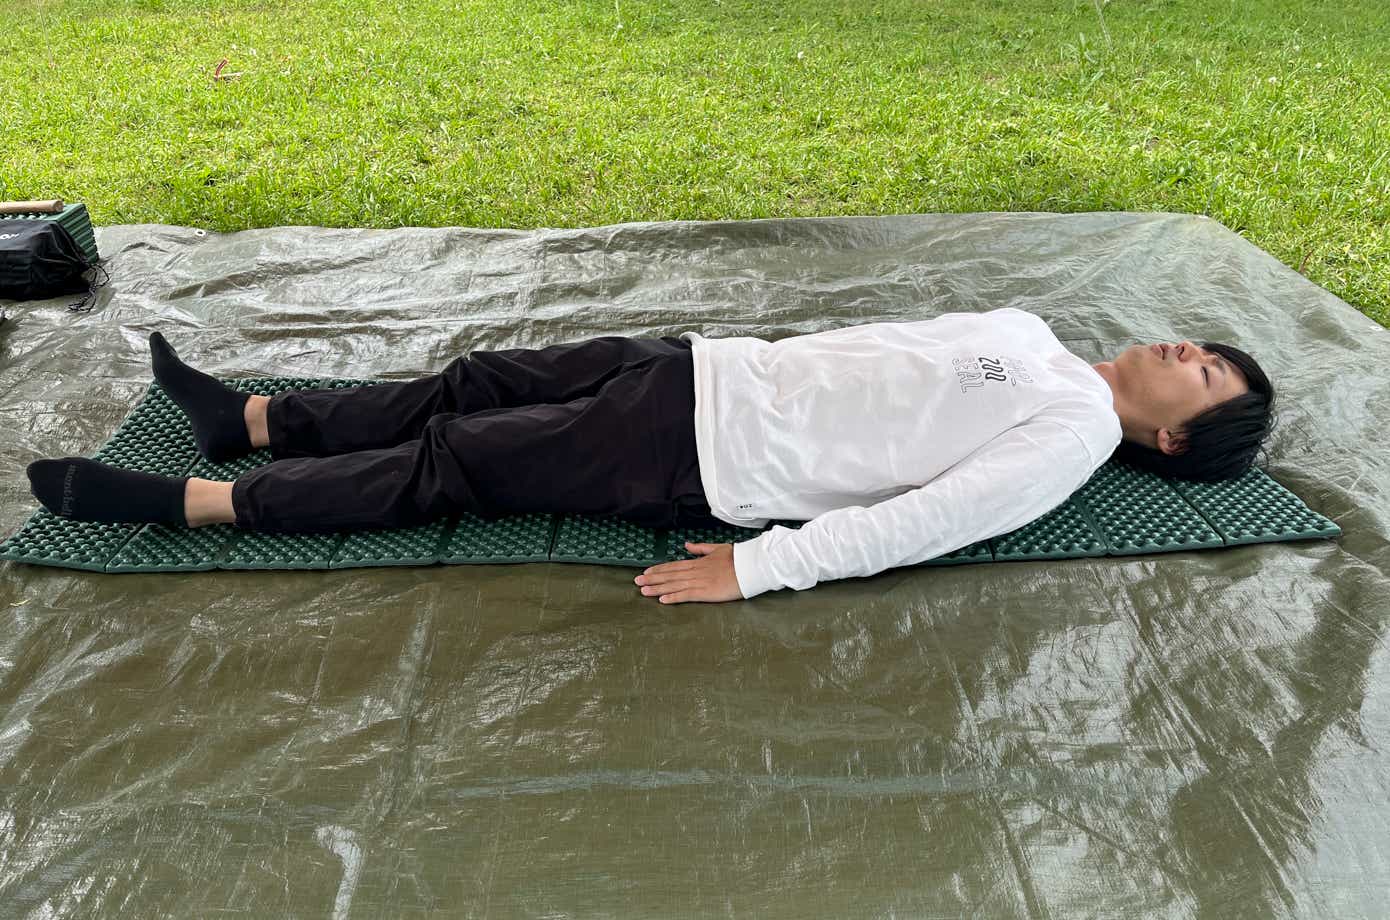 エバニューのXPE Camp matに寝る男性